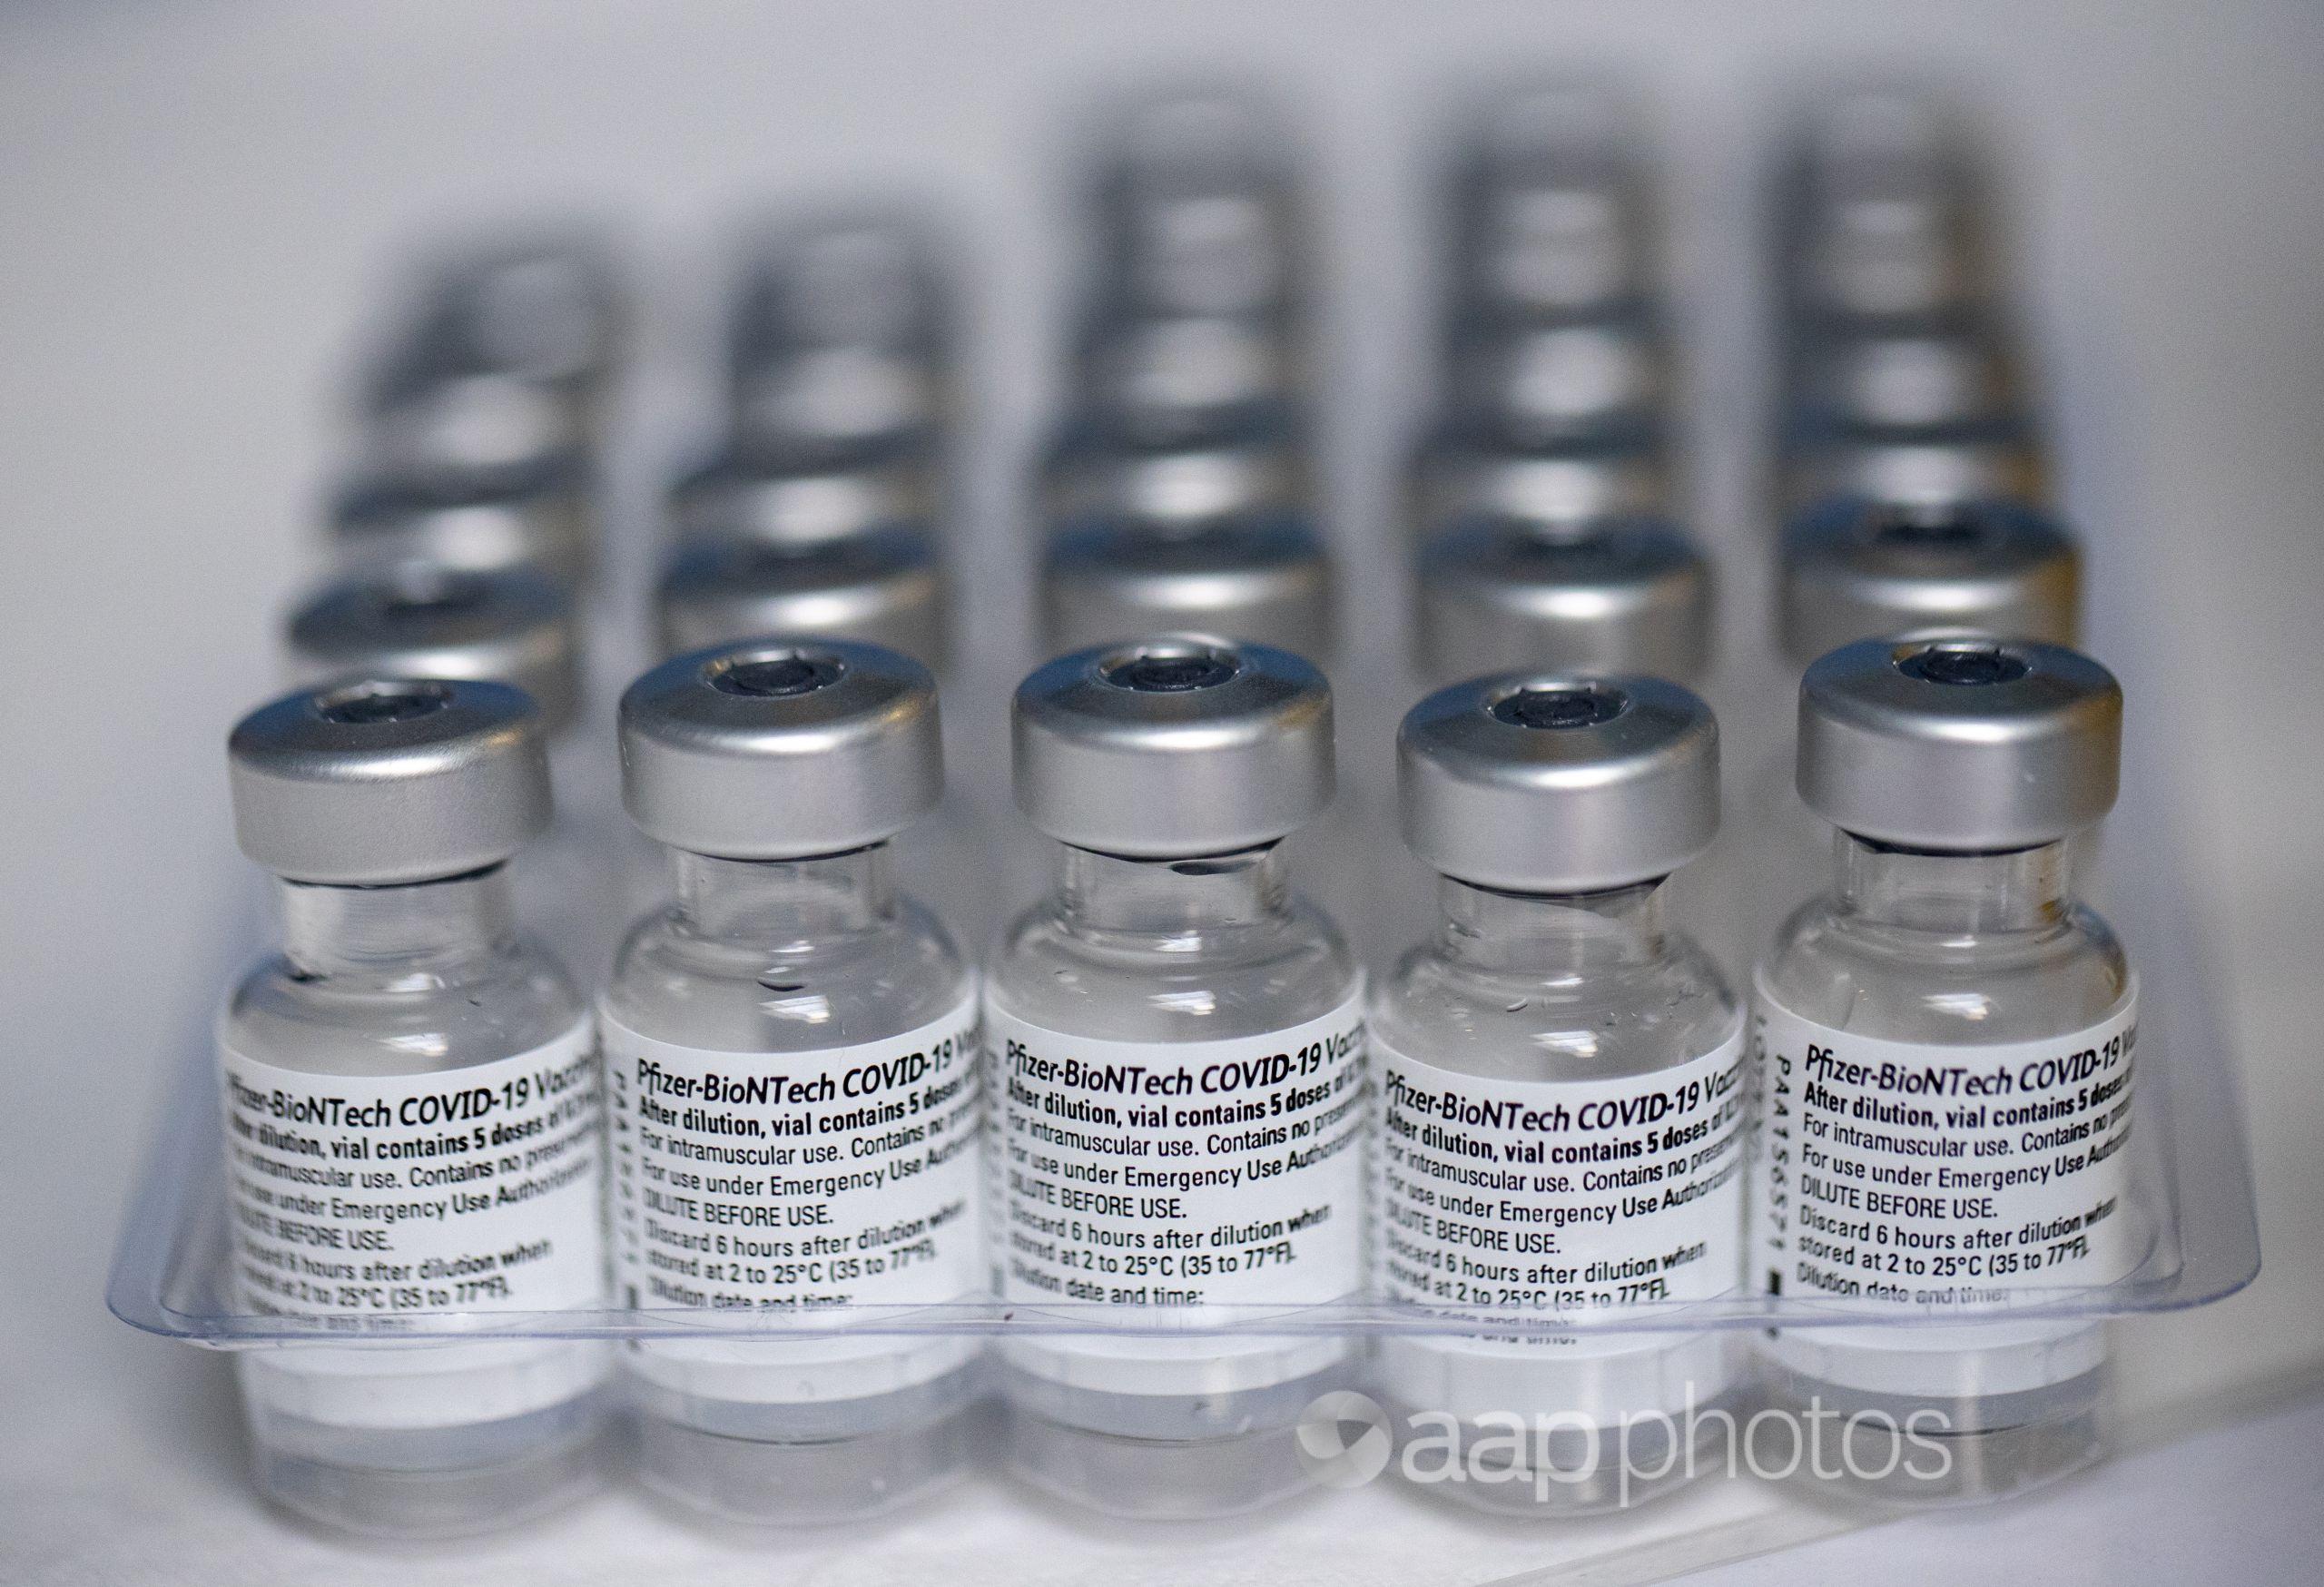 Pfizer COVID-19 vaccine vials.